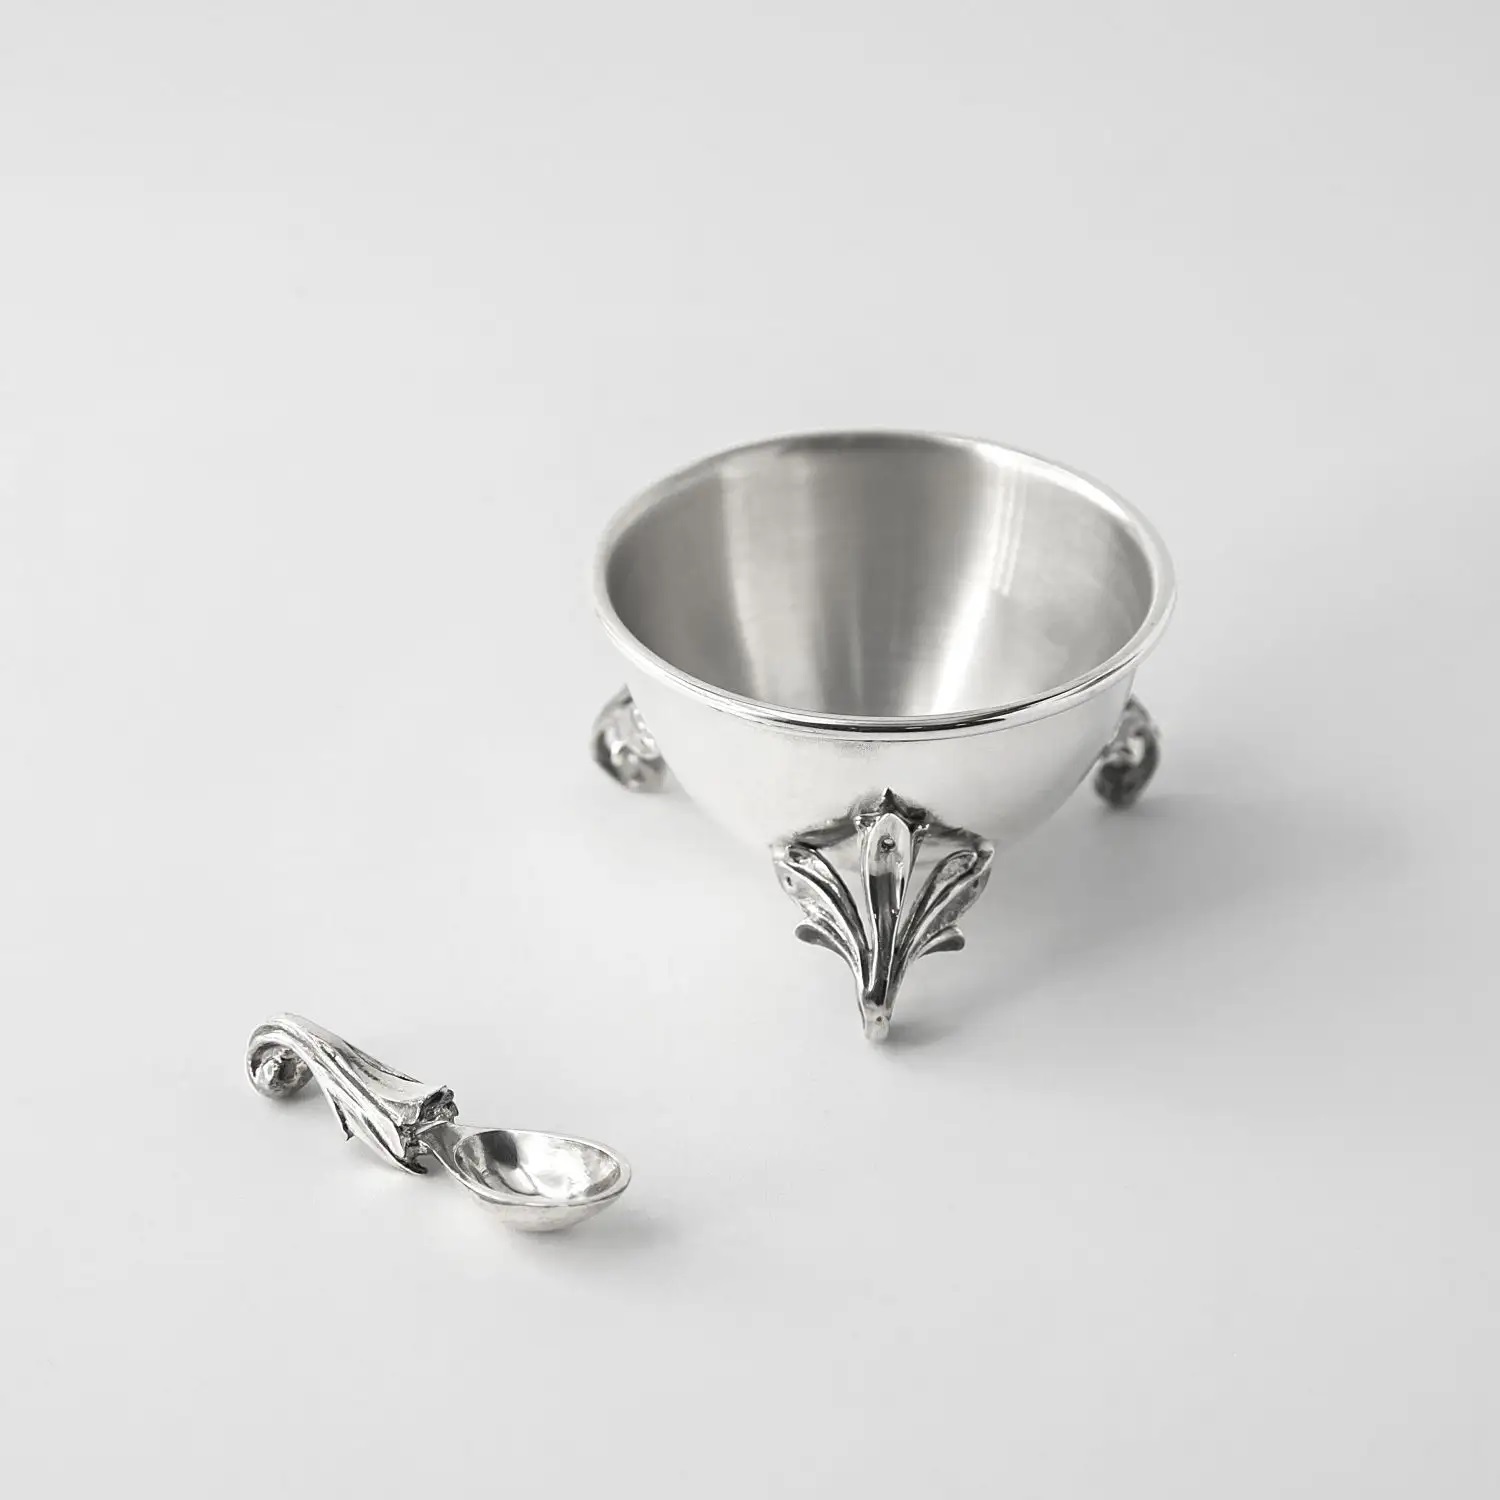 Серебряная солонка Вьюнок с ложкойФото 487-01.jpg